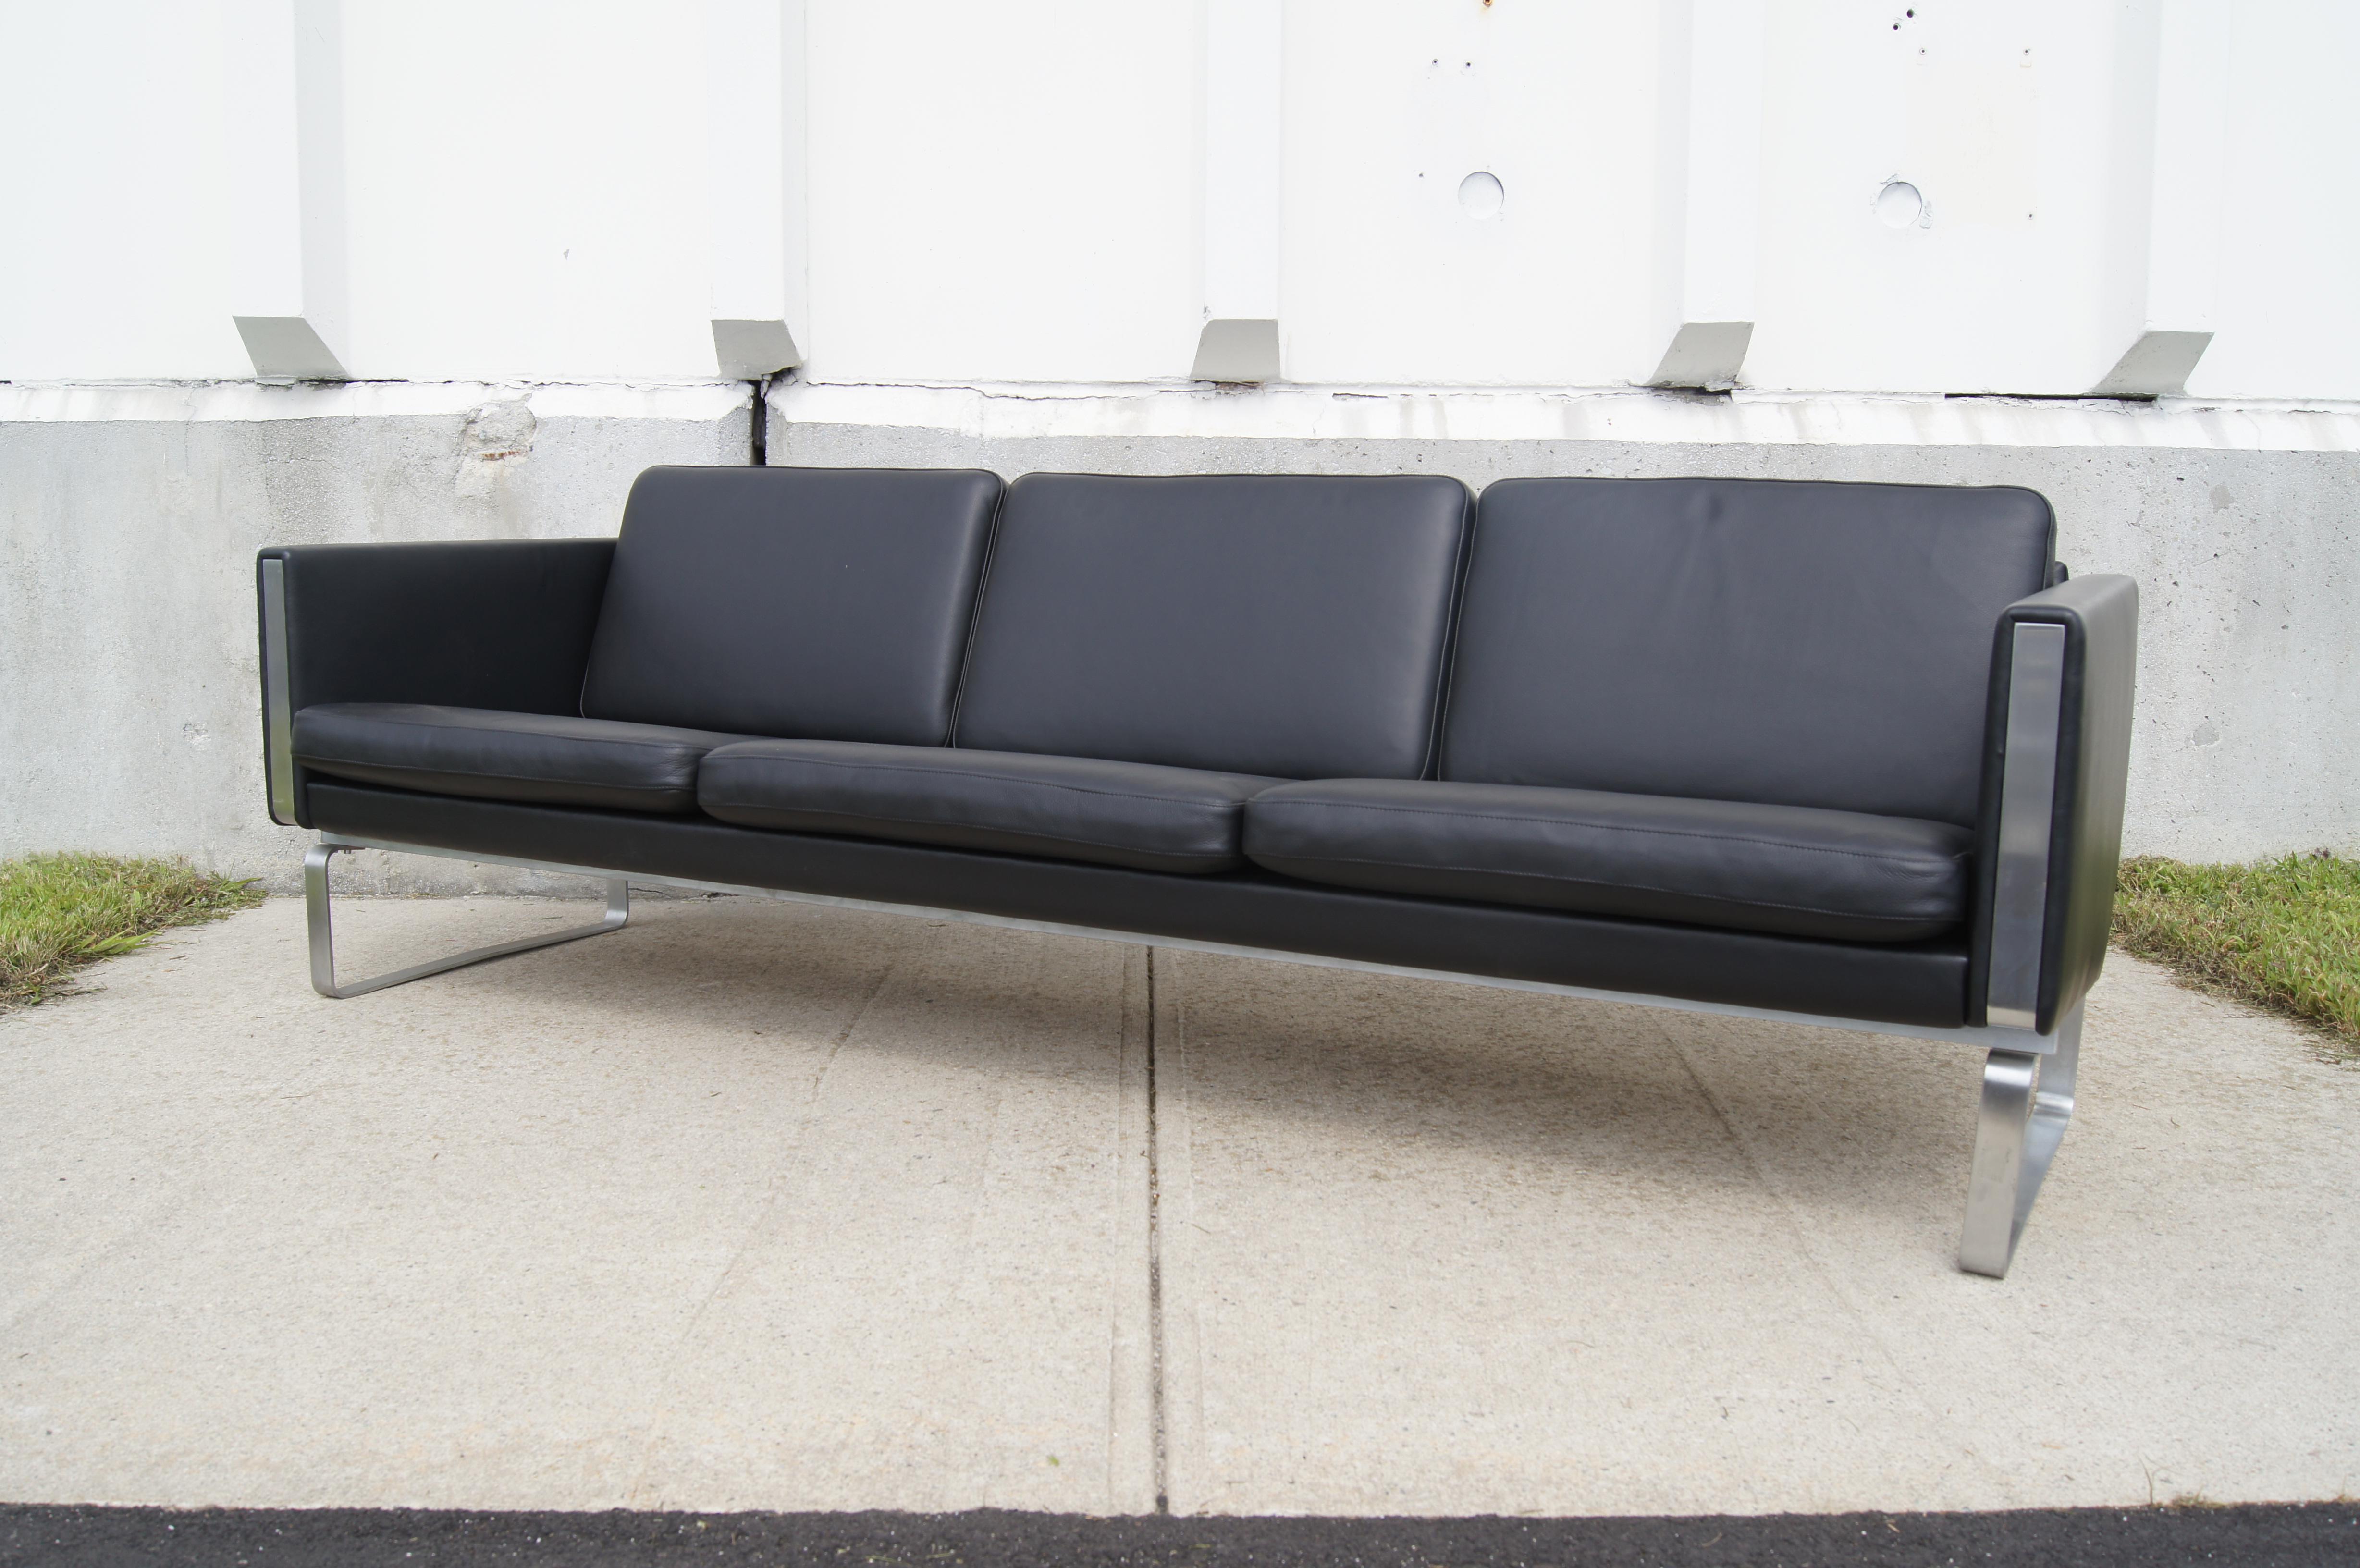 Conçu par Hans Steele au début des années 1970, ce canapé très confortable, en cuir noir riche, repose sur une base en acier inoxydable poli qui se prolonge à l'avant et à l'arrière des accoudoirs rembourrés. 

Ce canapé trois places intemporel,